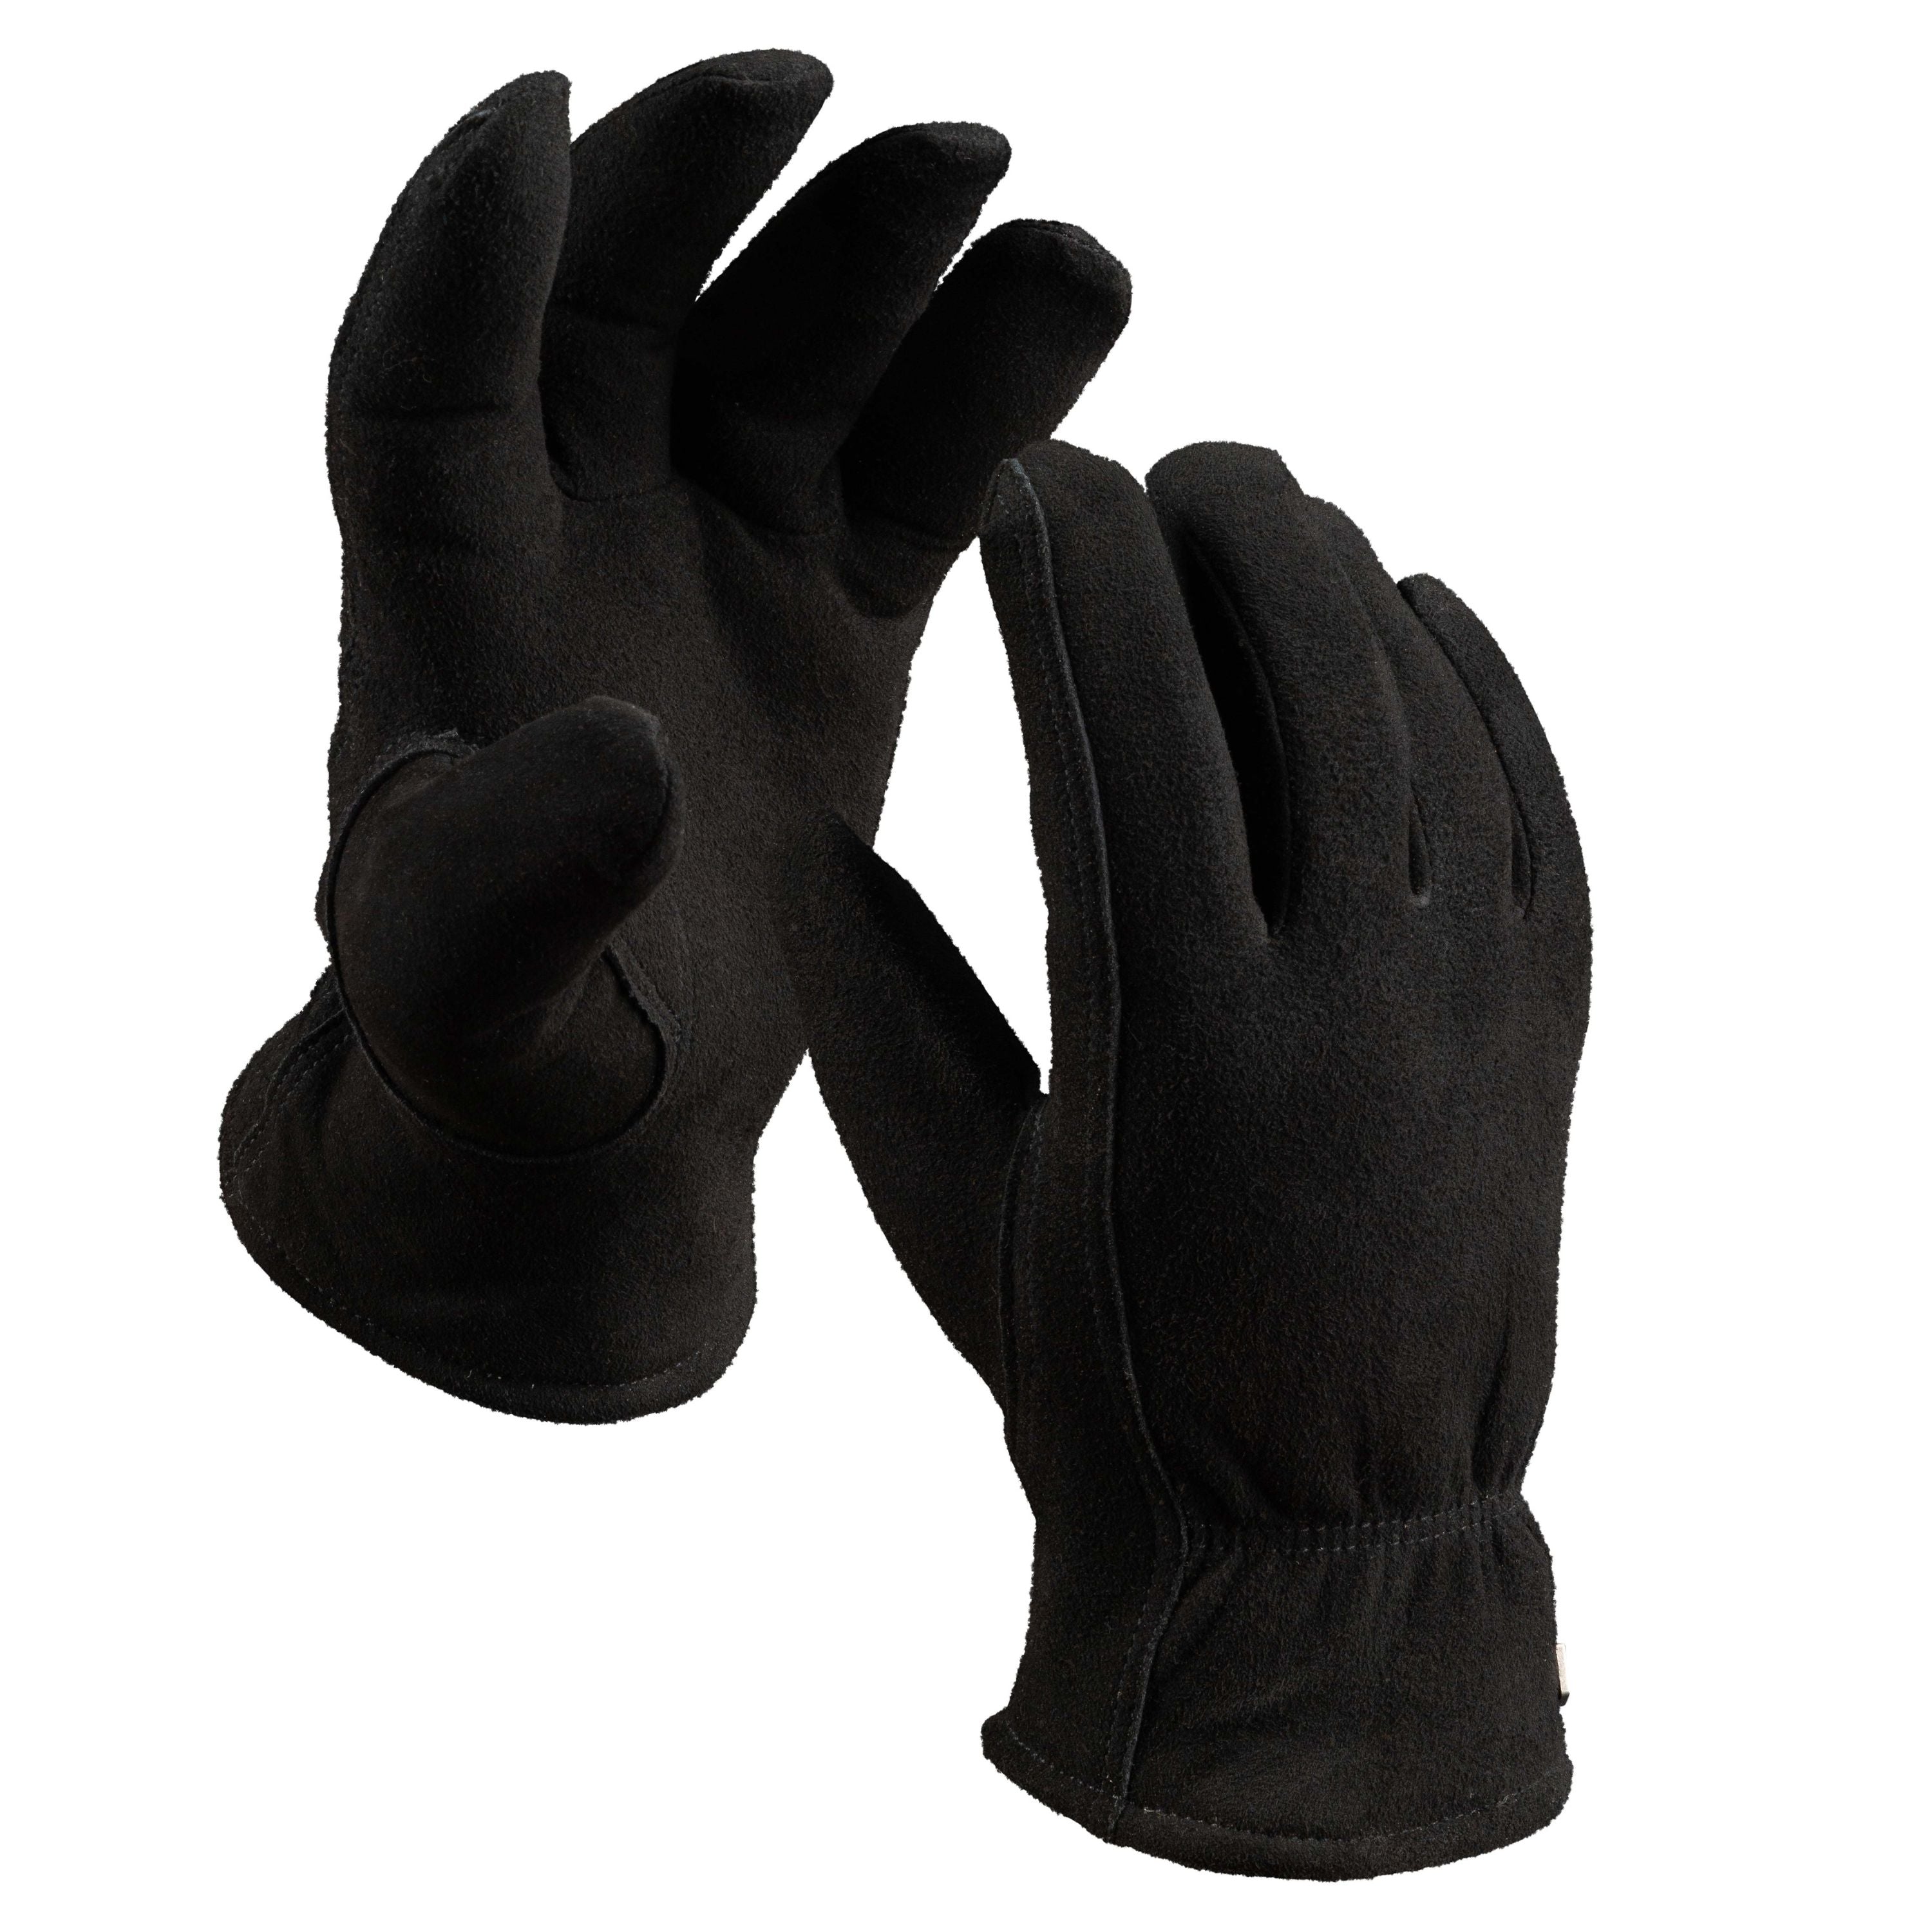 Gants de ville en cuir Chamonix - Homme||Chamonix Leather city gloves -  Men’s